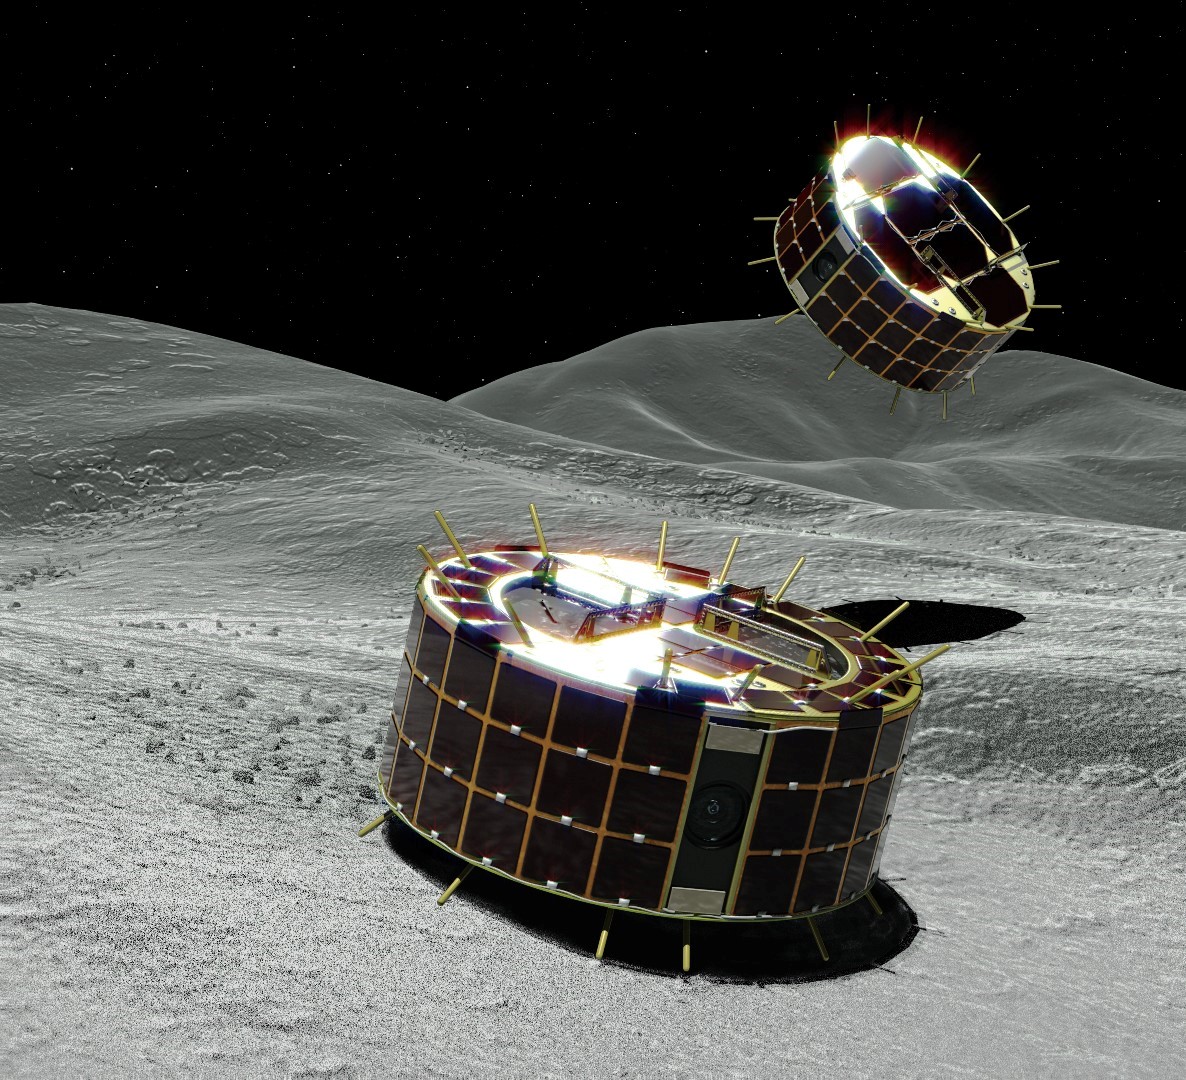 日本隼鳥2號太空船探測器成功登陸龍宮小行星| T客邦